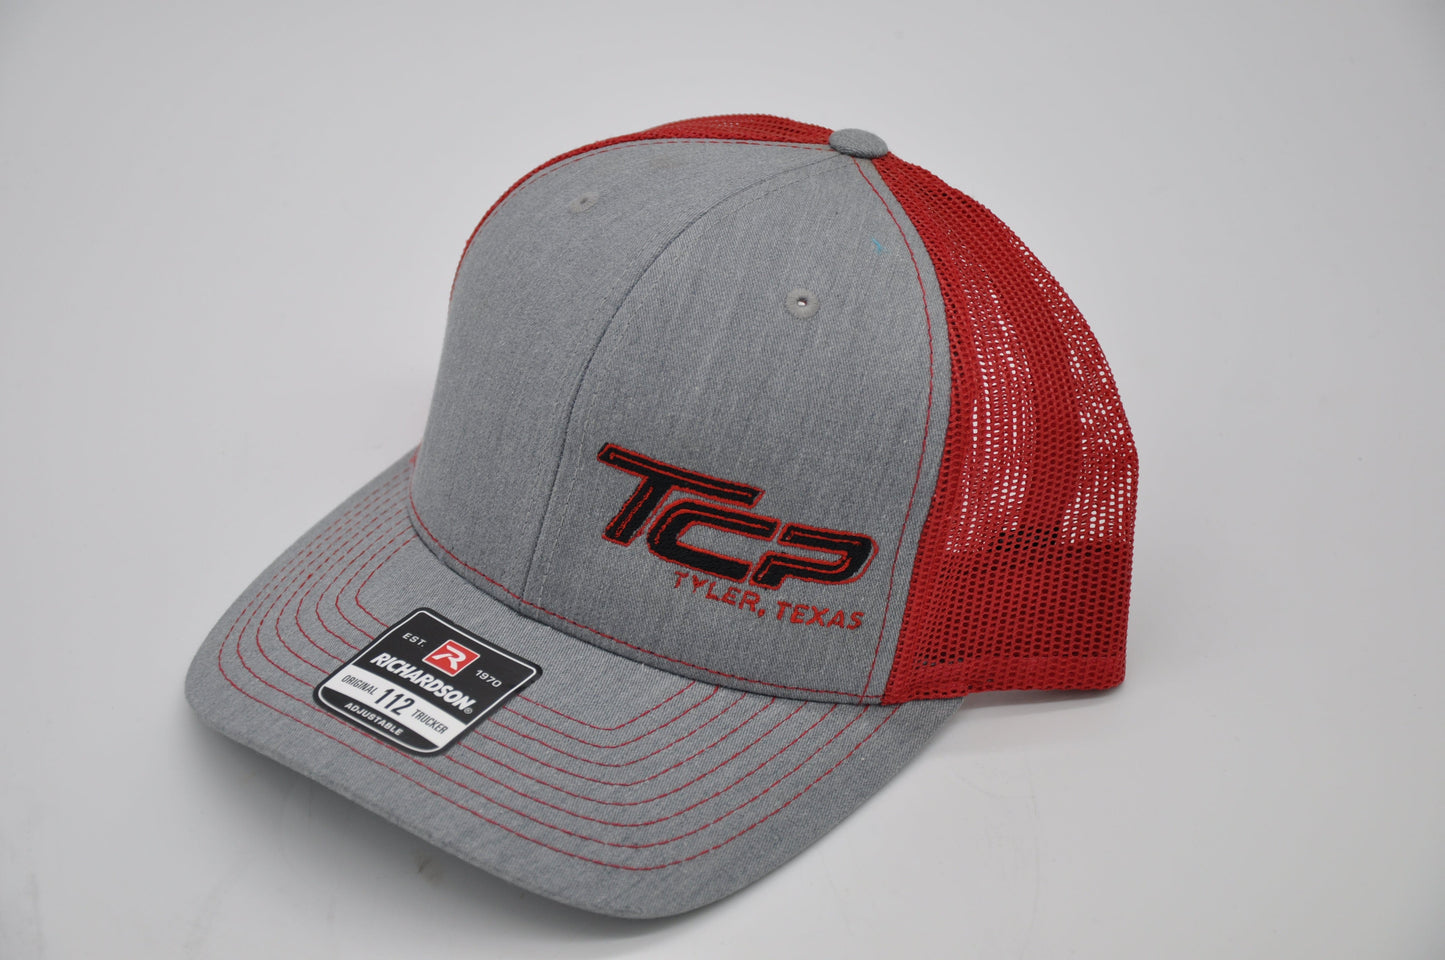 TCP Grey Hat/Cap (Red Mesh)